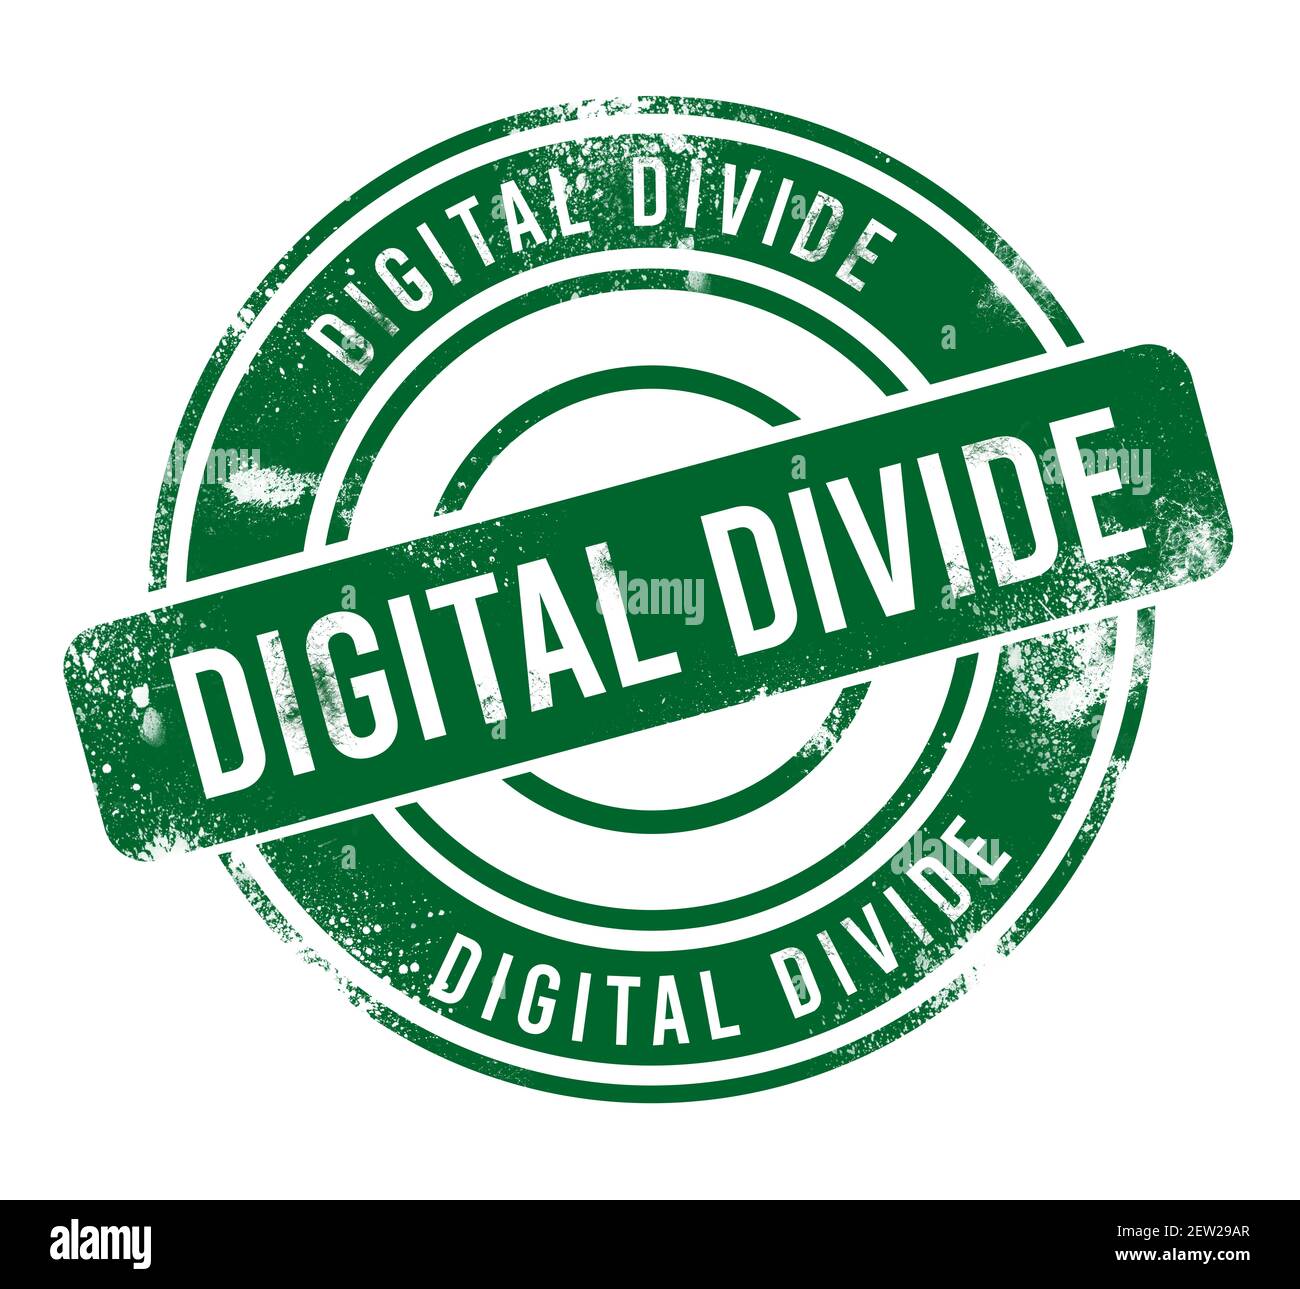 Digitale Teilung - grüne runde Grunge-Taste, Stempel Stockfoto